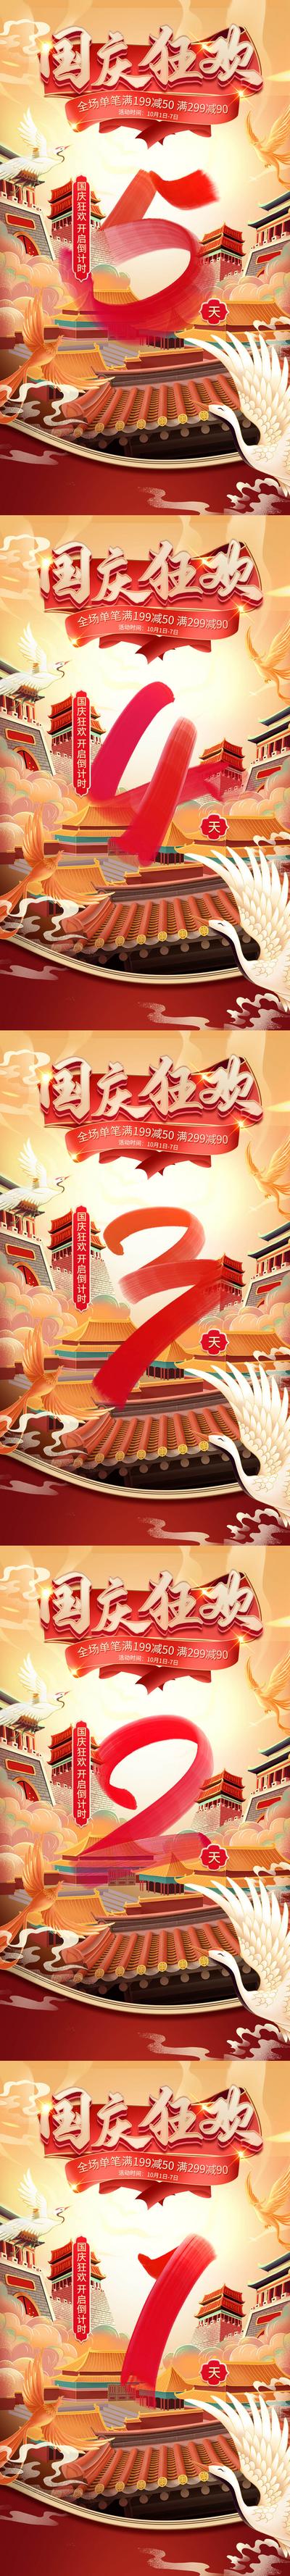 南门网 海报 公历节日 国庆节 倒计时 促销 活动 国潮 系列